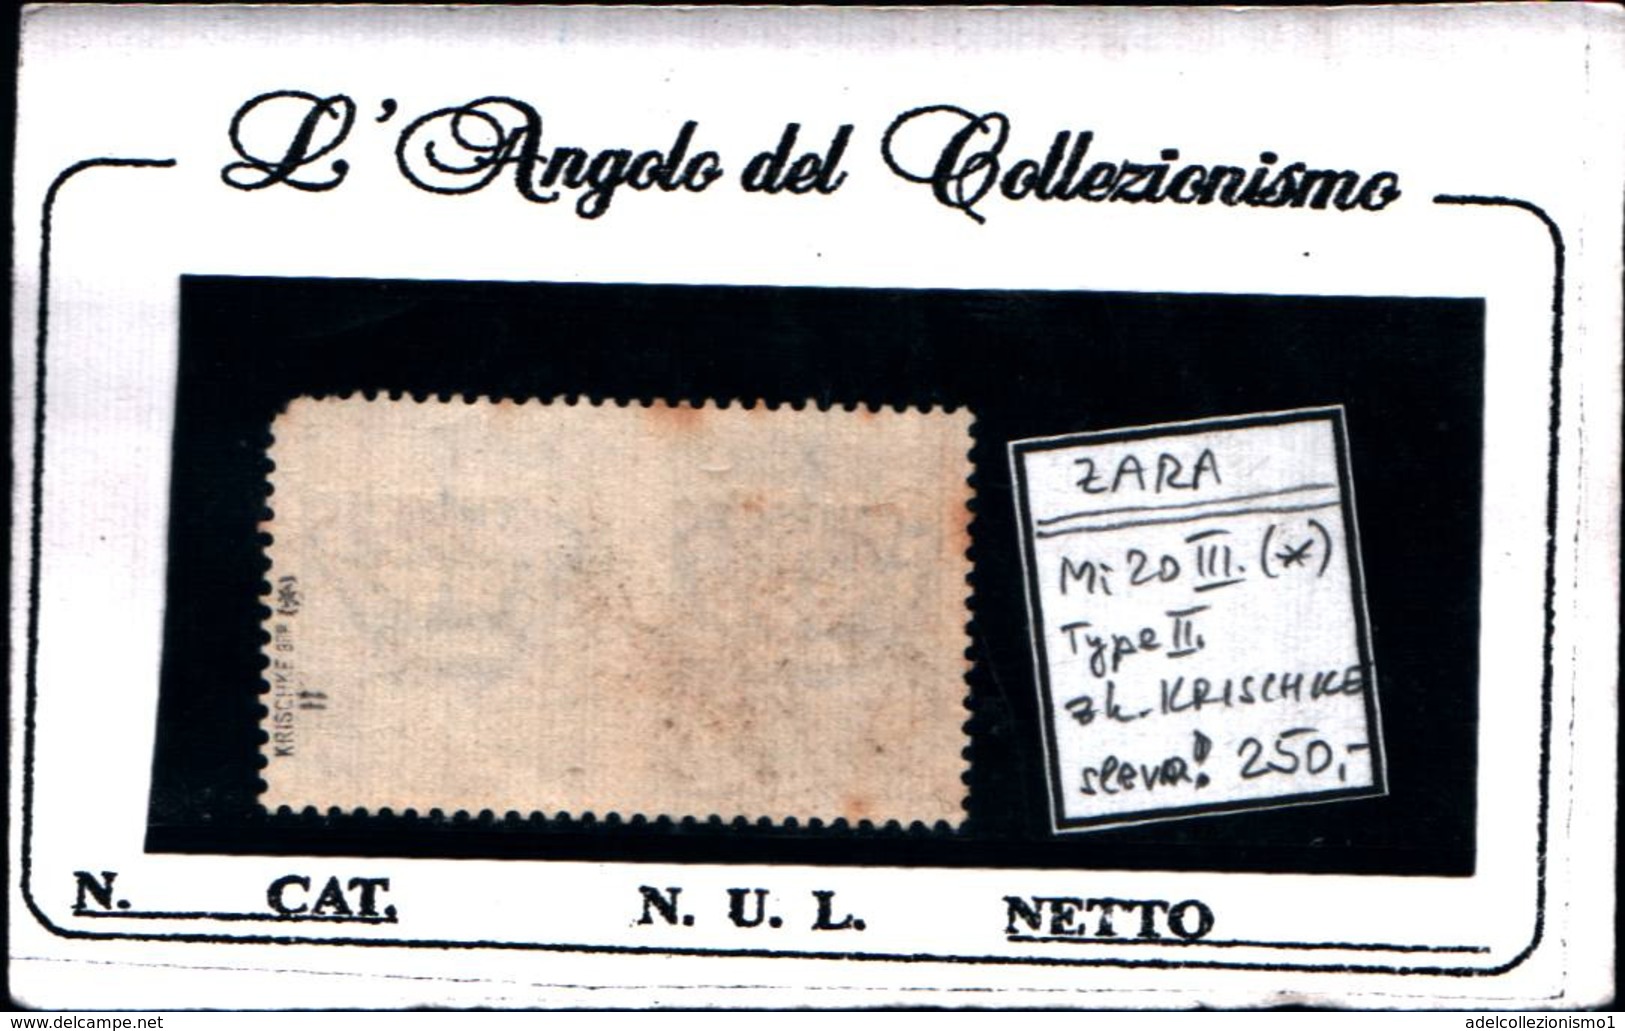 6942B) ITALIA- Zara, 50C. Serie Di Propaganda Sovrastampata - 9 Ottobre 1943-MI 20 III-TYPE II -FIRMATO SENZA GOMMA - Occ. Allemande: Zara